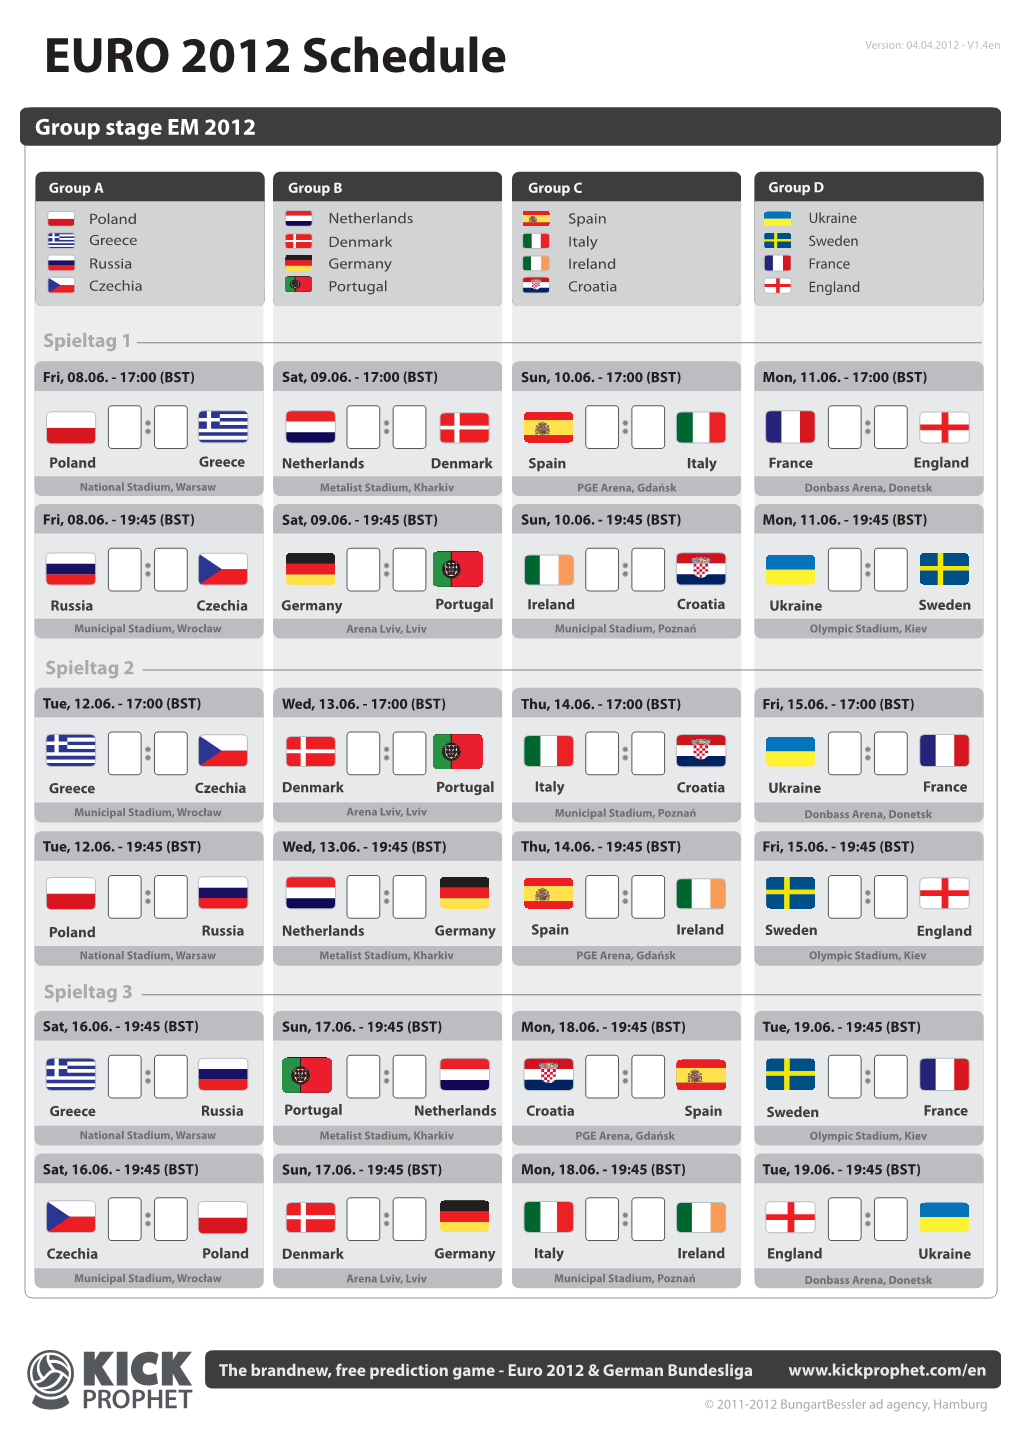 EURO 2012 Schedule Version: 04.04.2012 - V1.4En